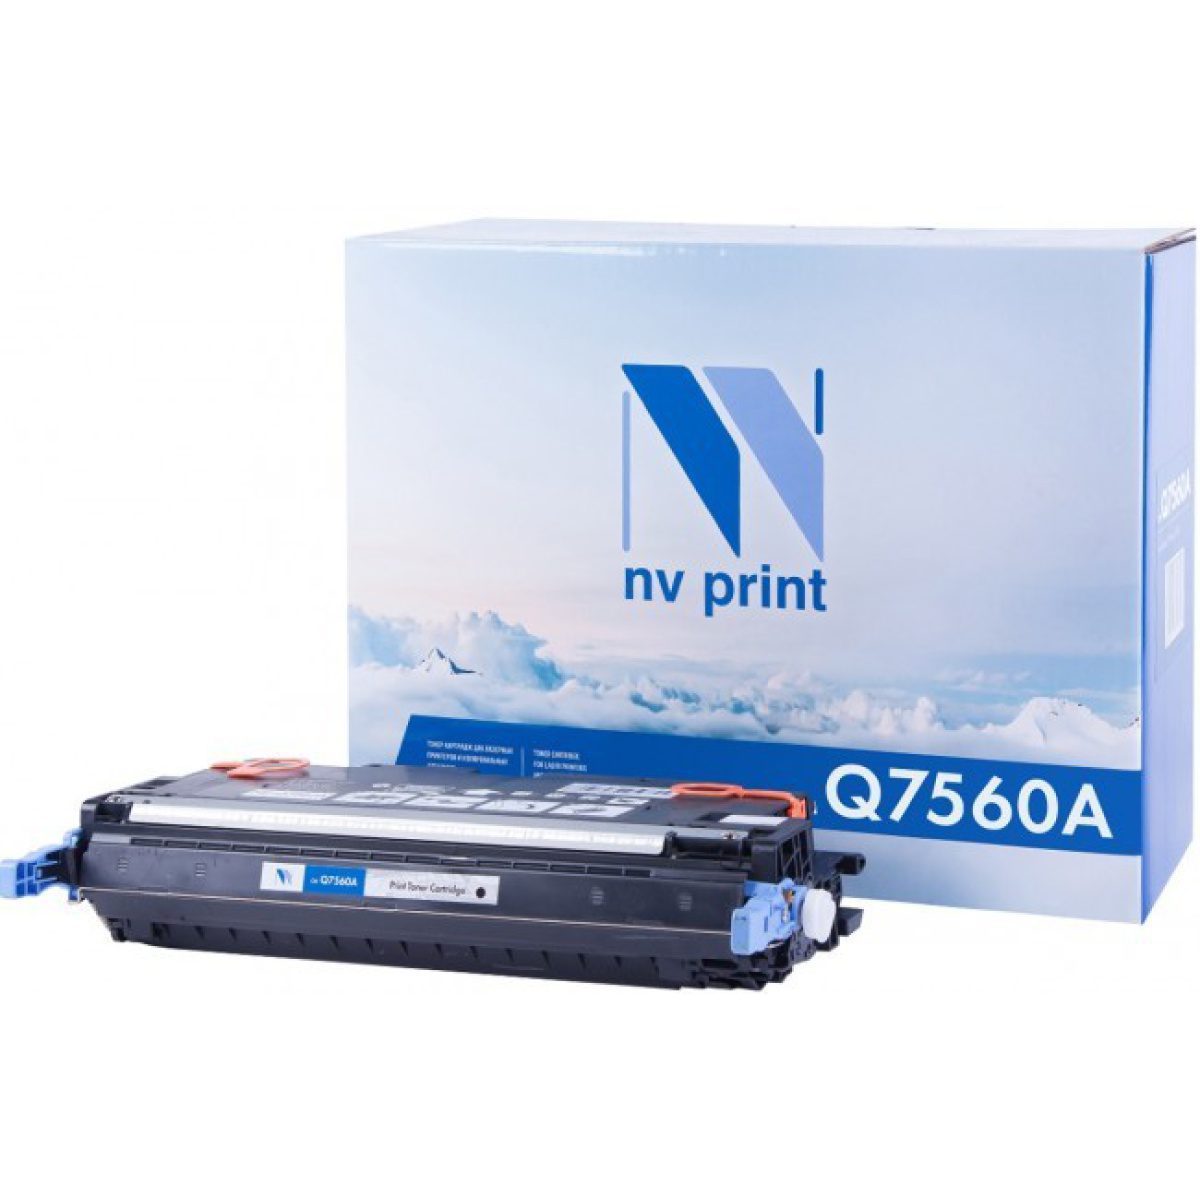 Купить картридж NV Print Q7560A черный по адекватной цене — Digit-Mall